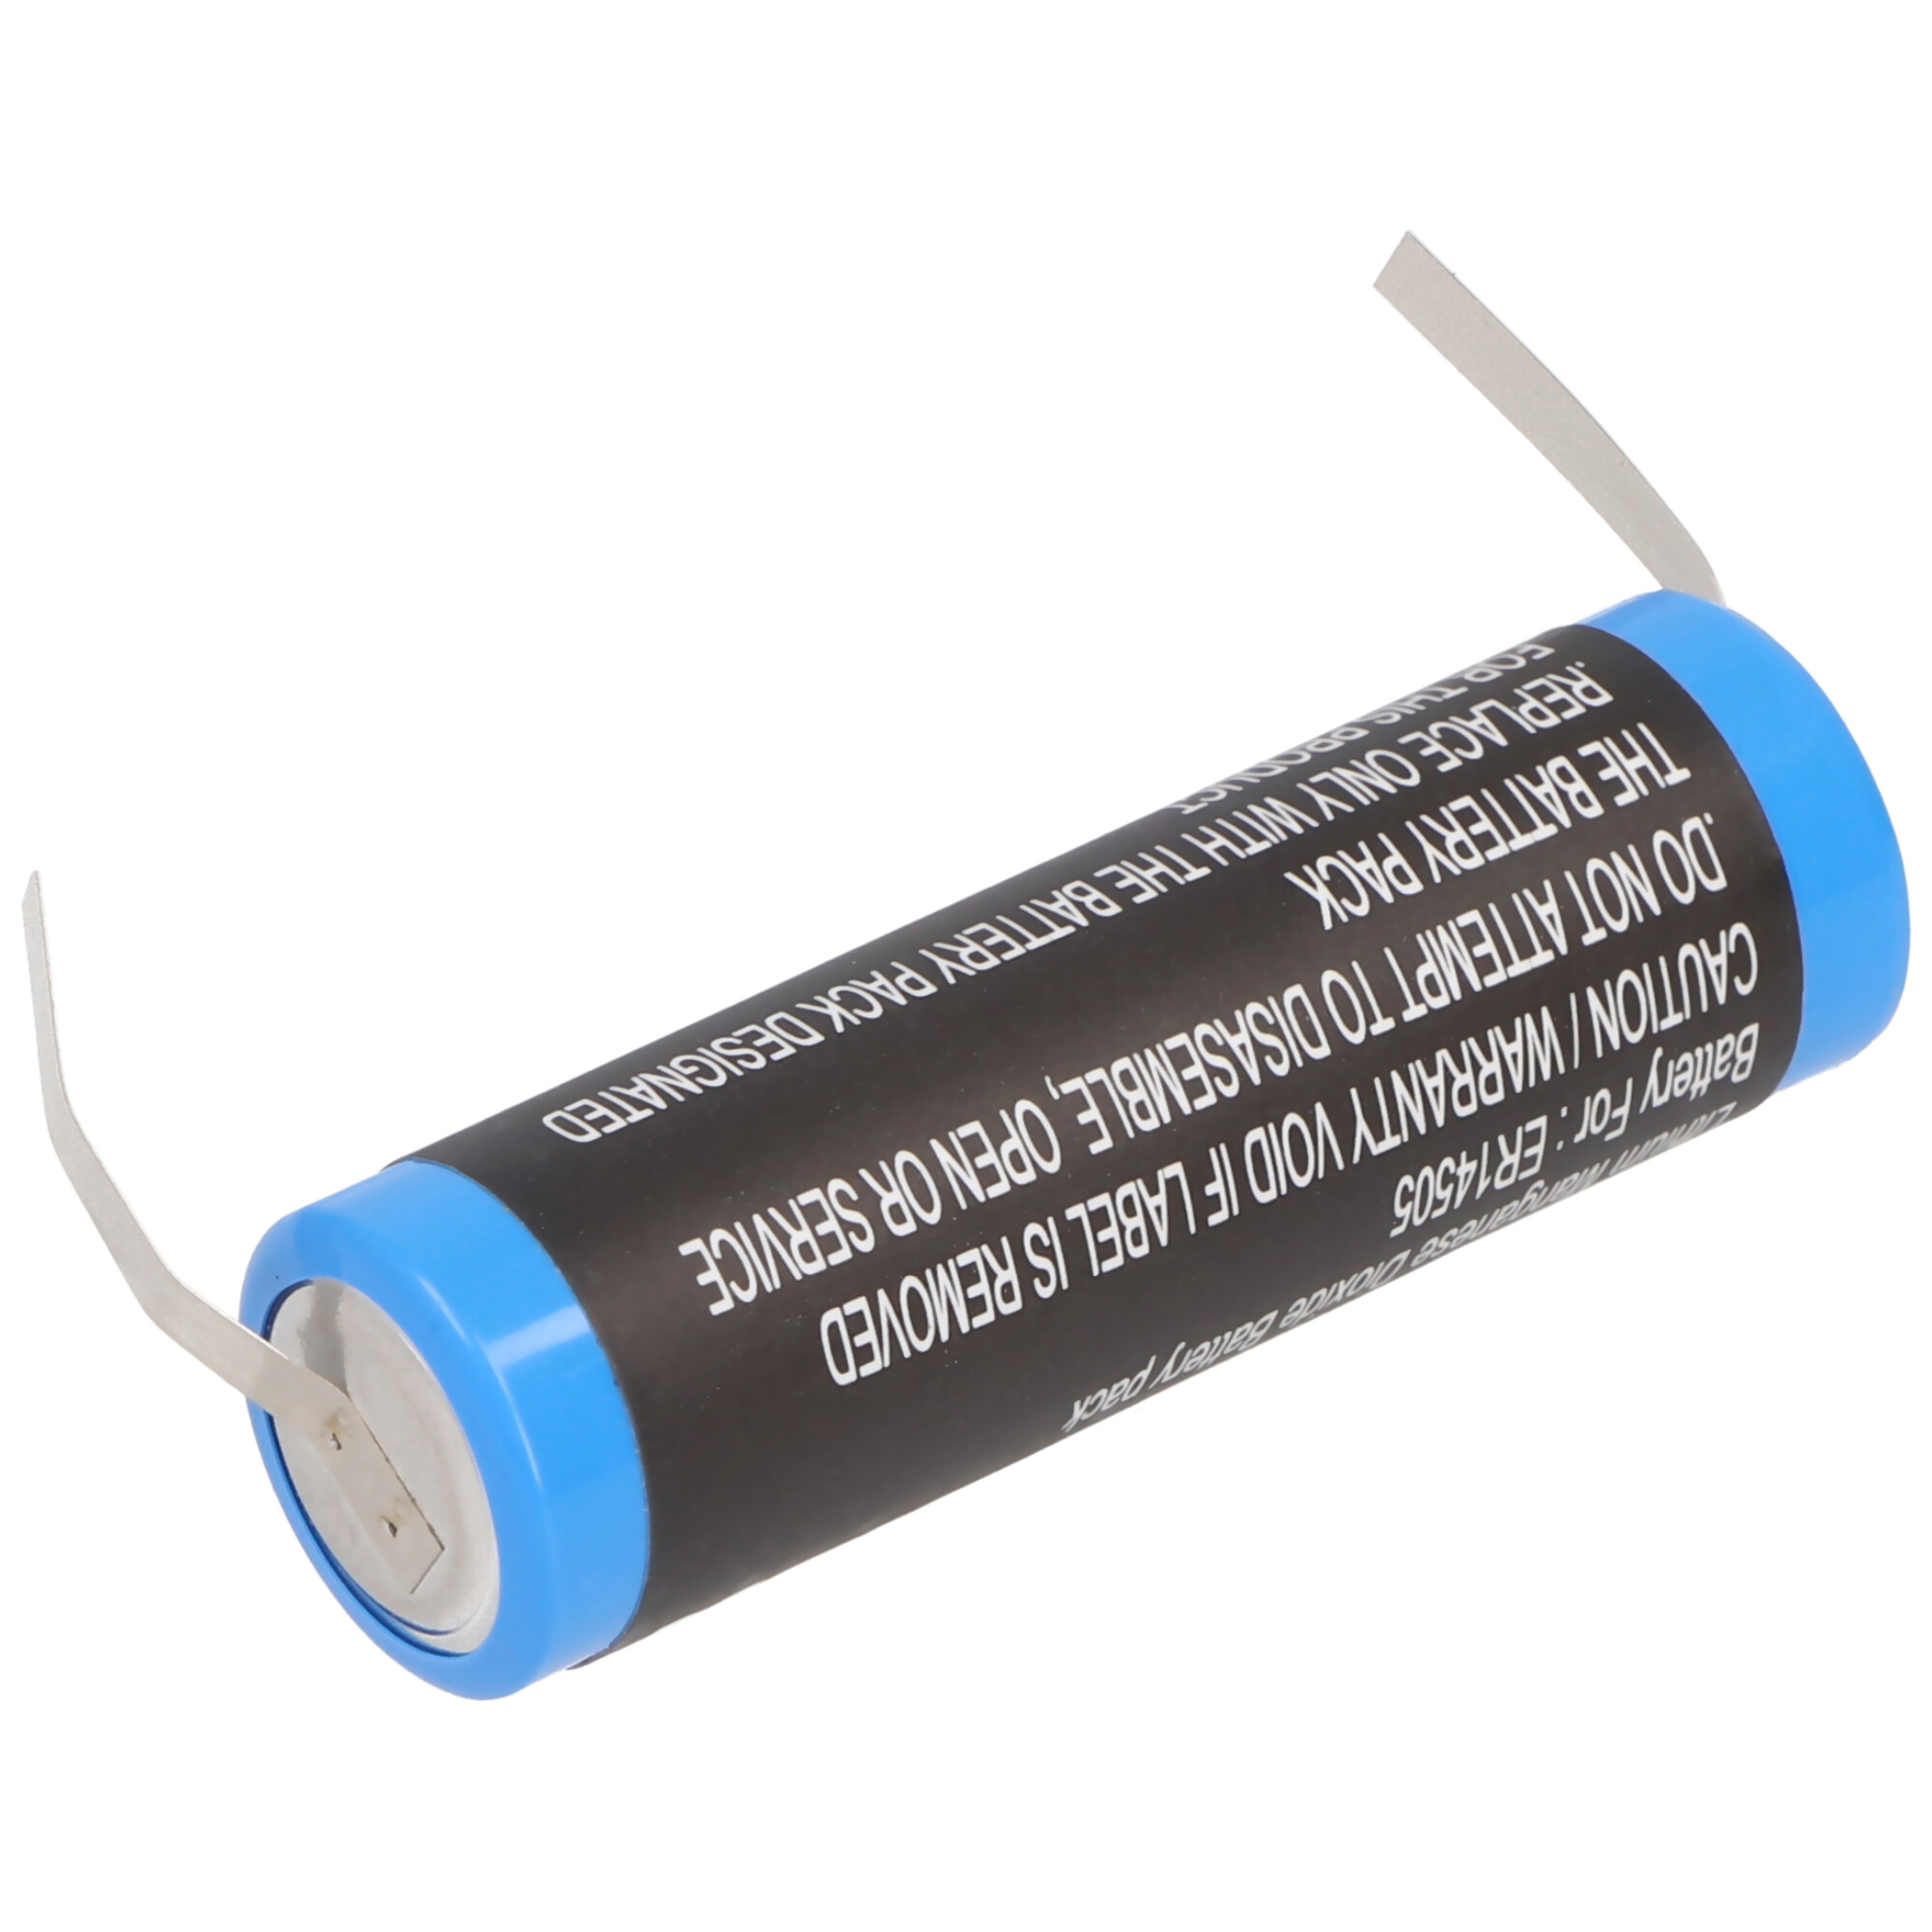 Maxell ER6C Batterie 3.6V 1800mAh für MITSUBISHI F2-40BL FX2N-48M LS14500-MF PM-20BL T2282